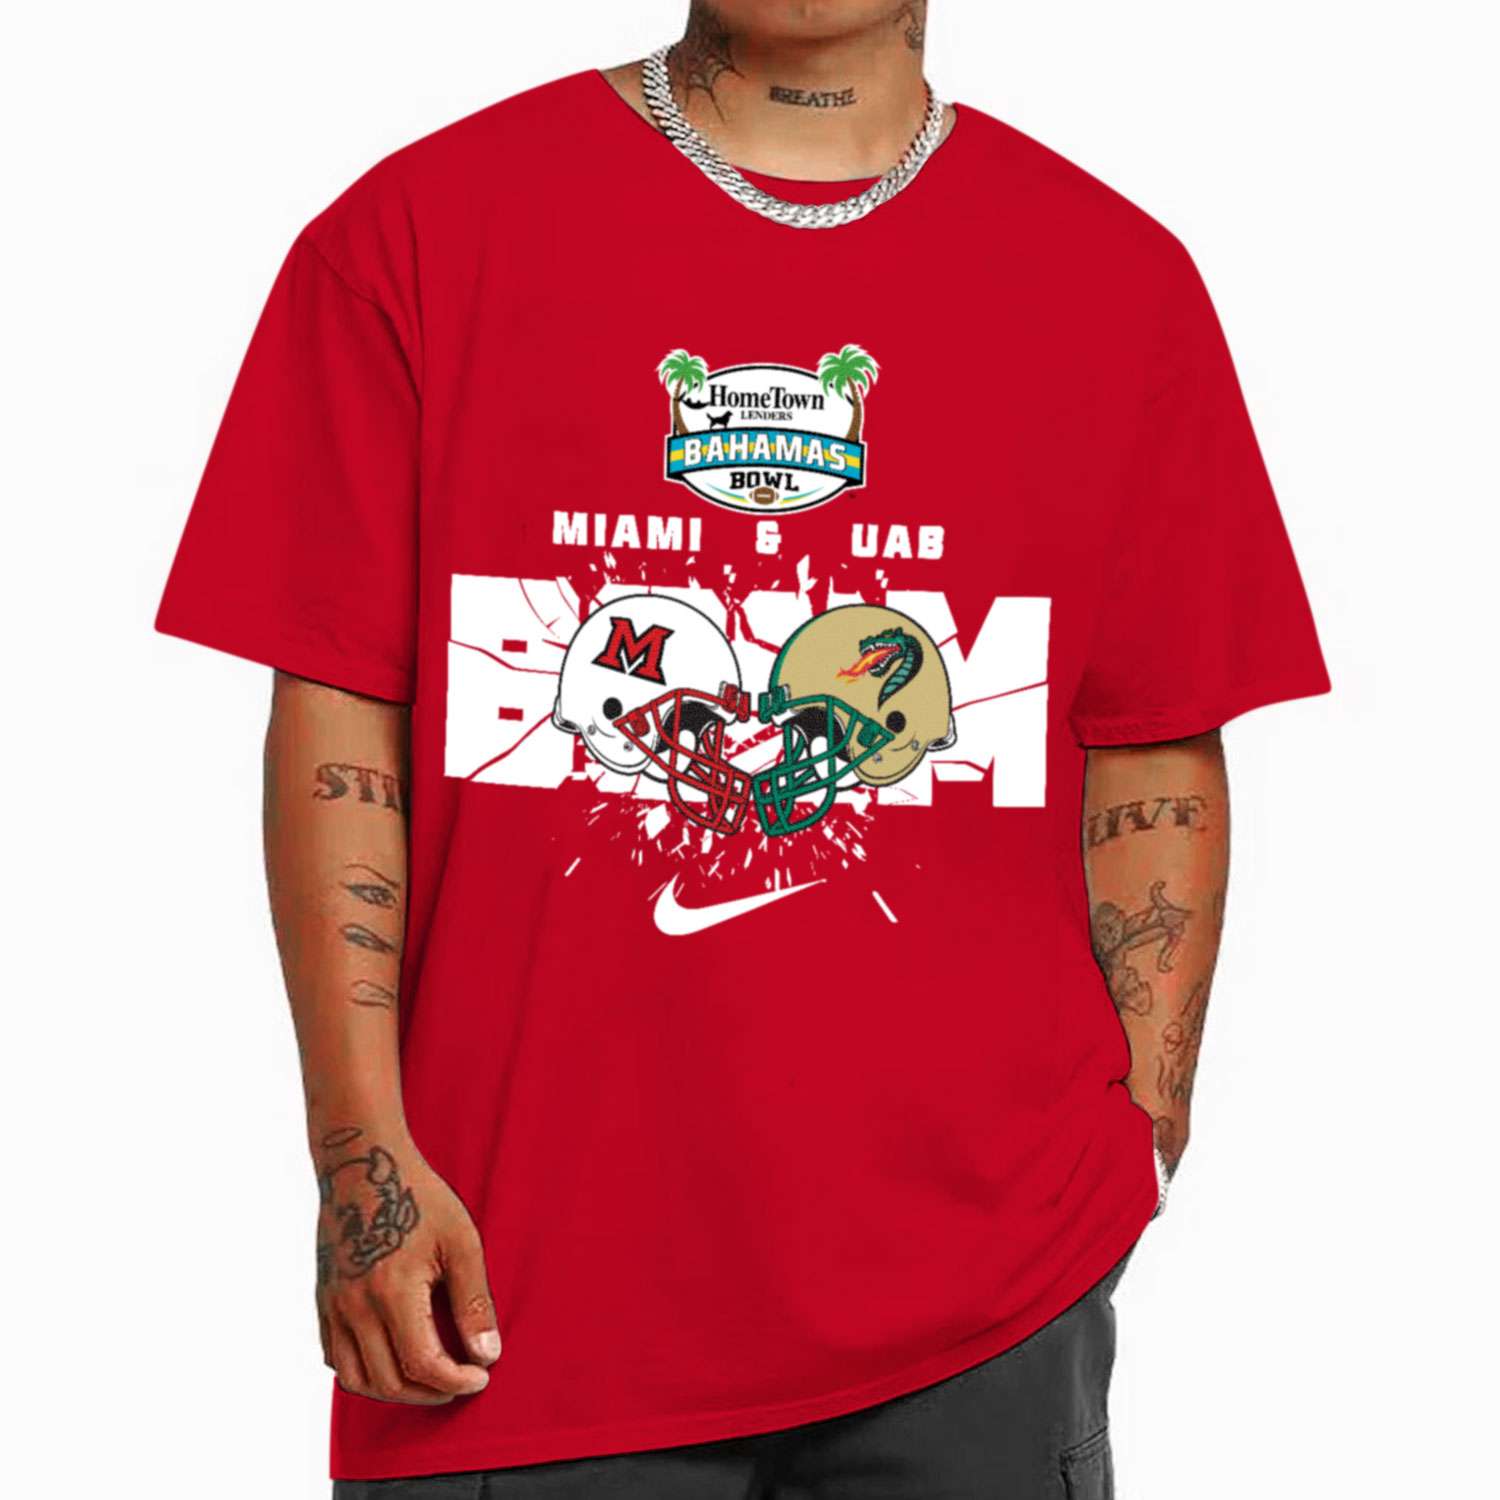 Miami And UAB Boom Helmet Home Town Lenders Bahamas Bowl T-Shirt